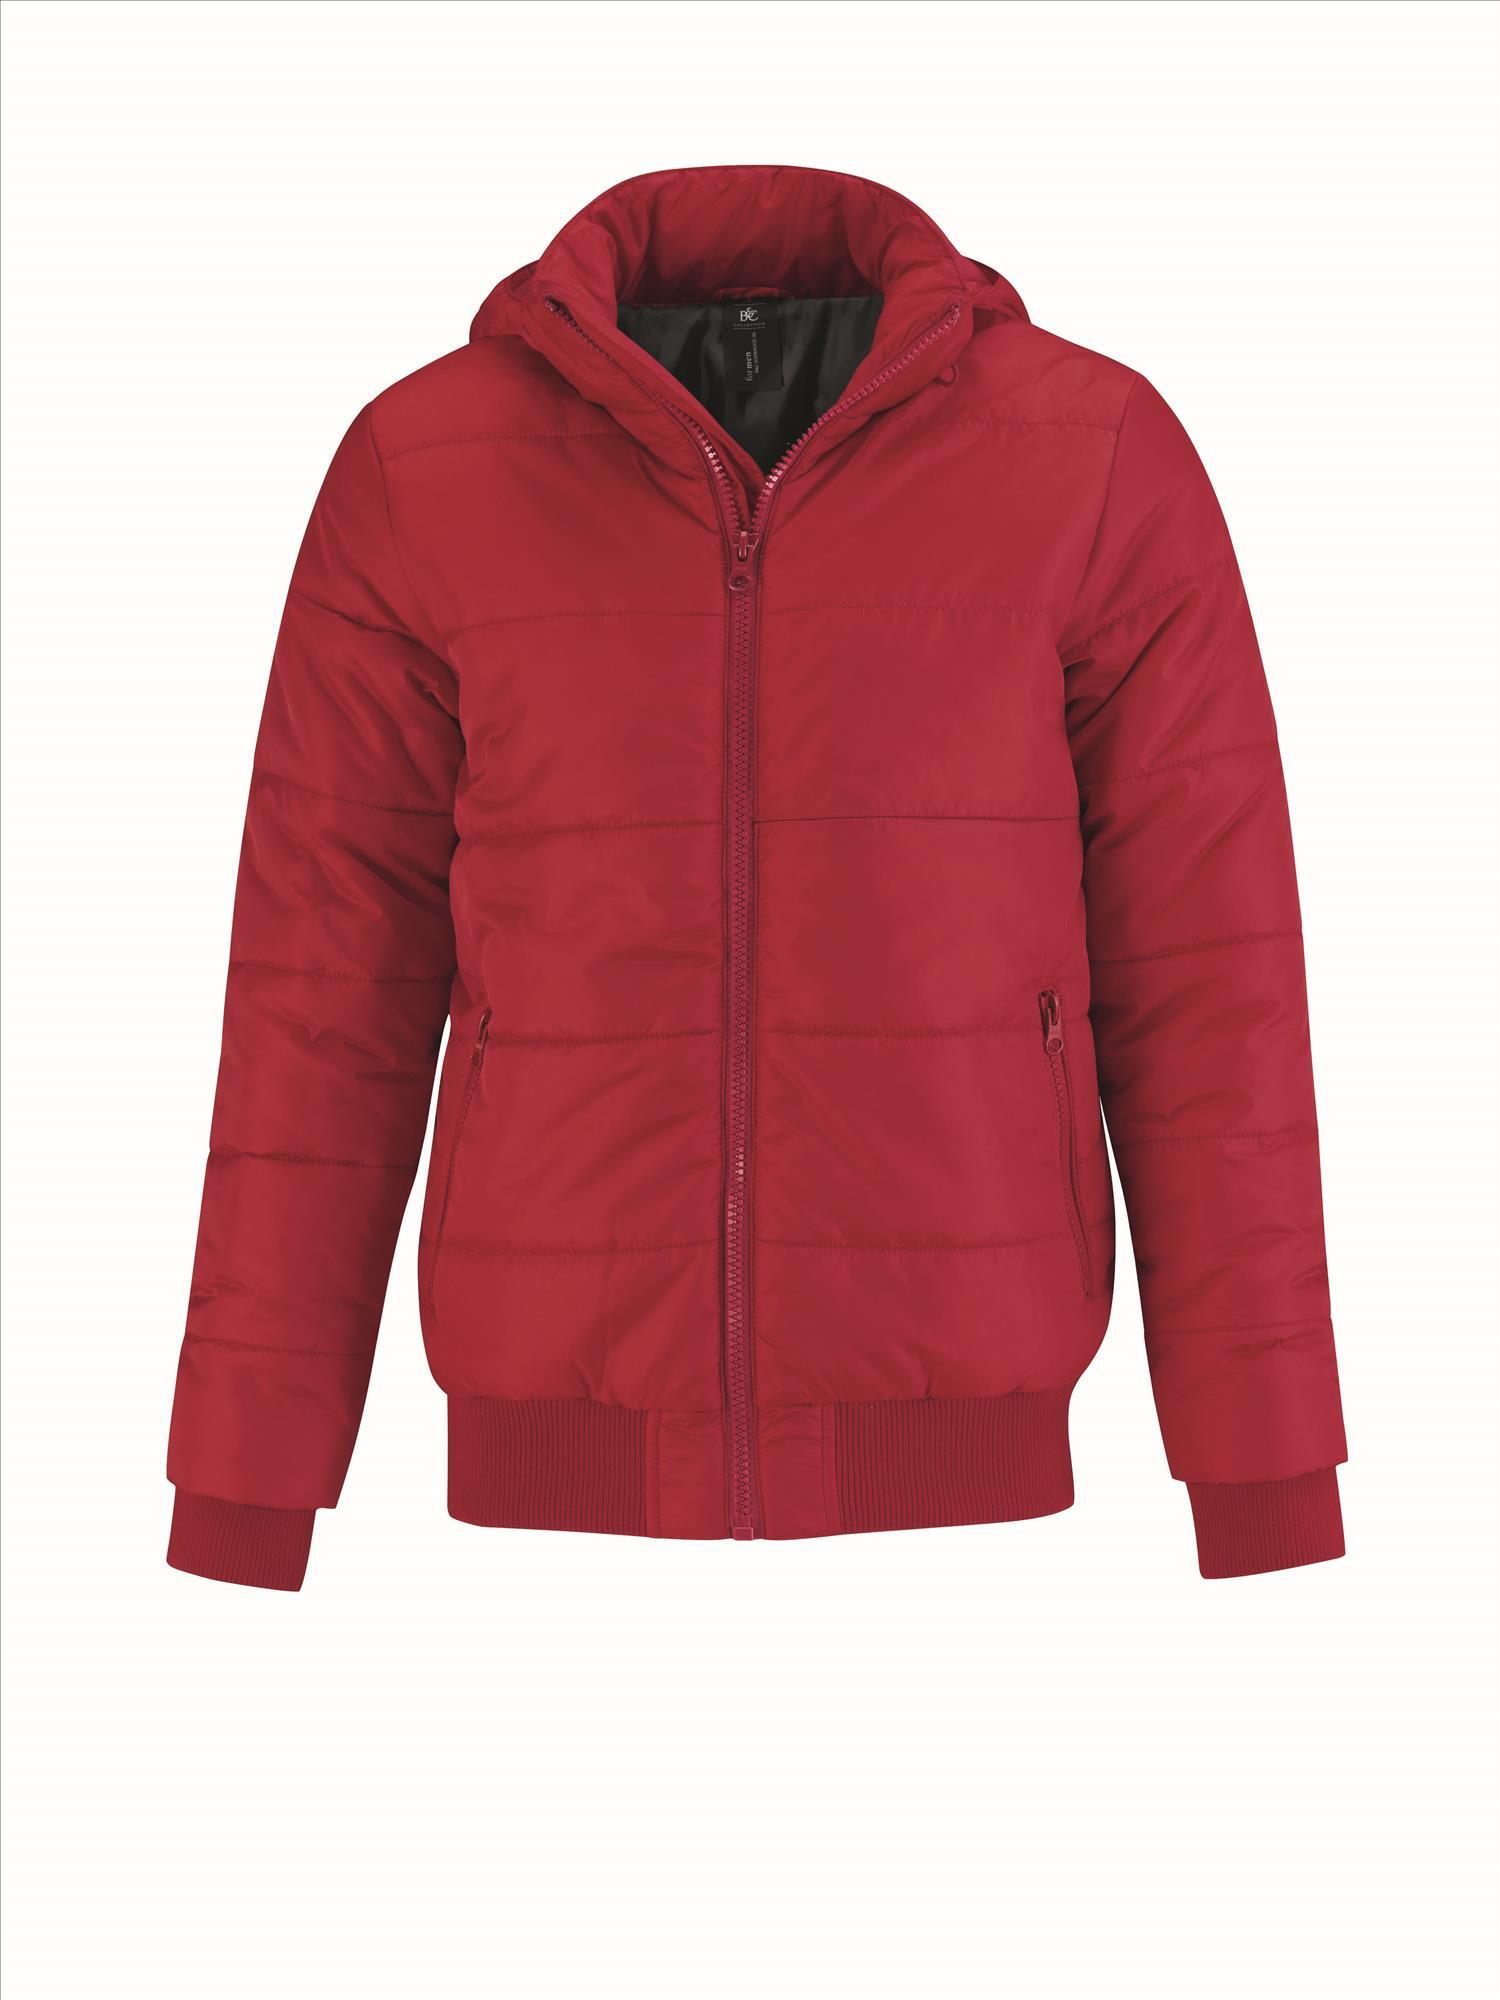 Gewatteerde jas voor mannen rood en afneembare gevoerde capuchon